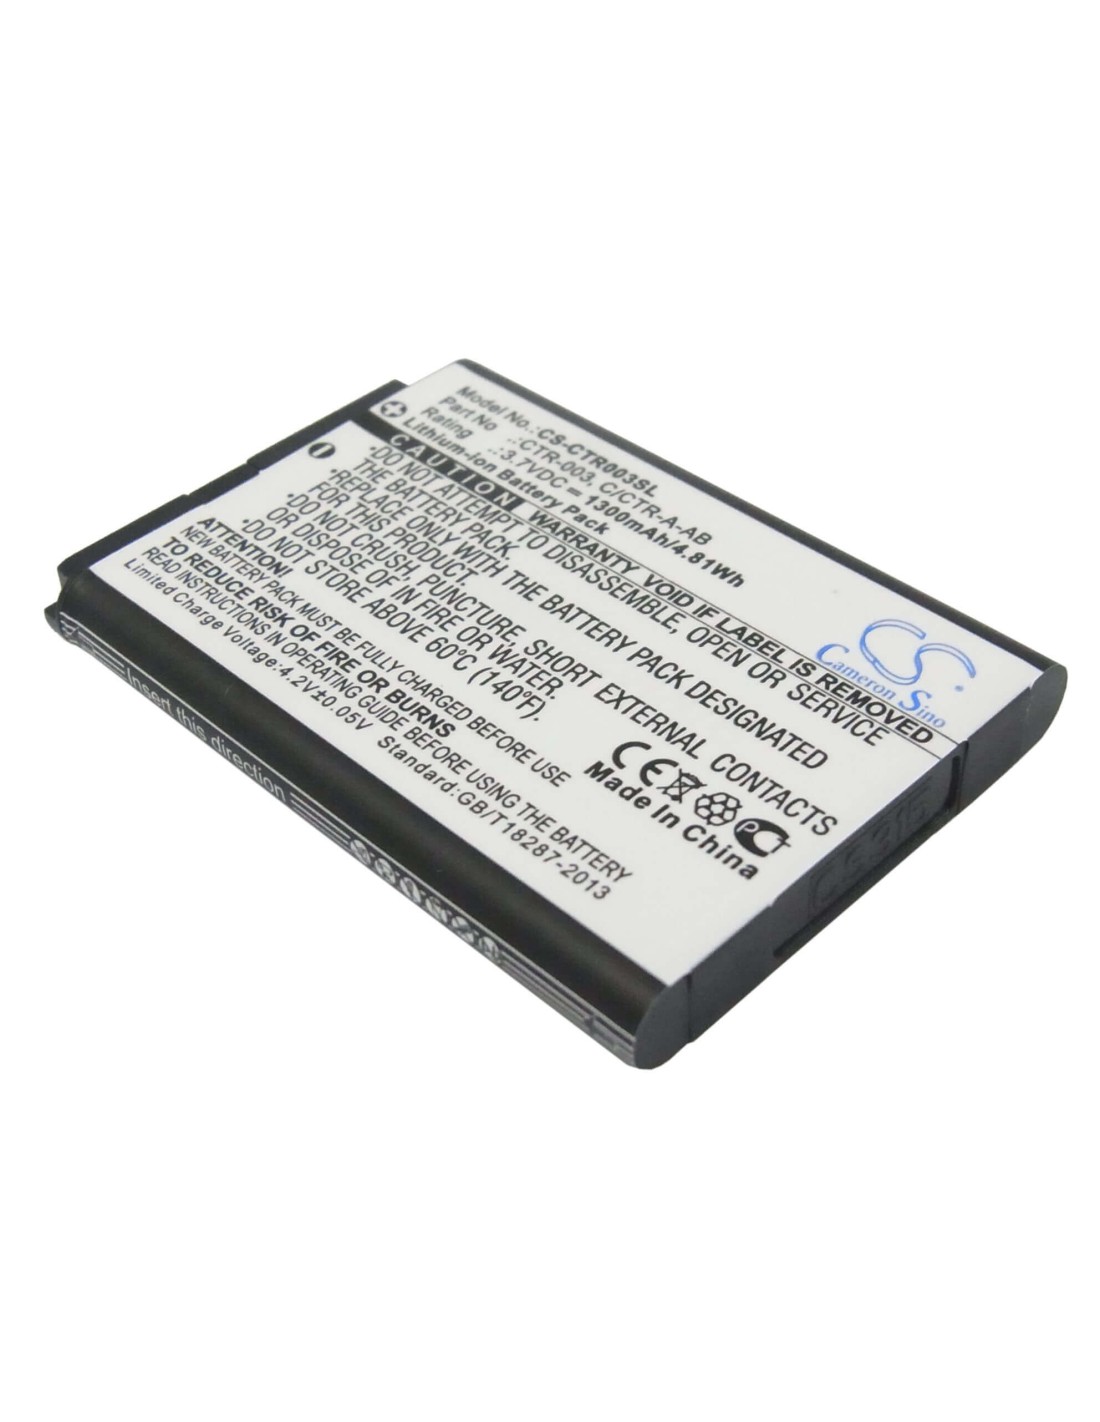 Battery for Nintendo 3ds, Ctr-001, Min-ctr-001 3.7V, 1300mAh - 4.81Wh